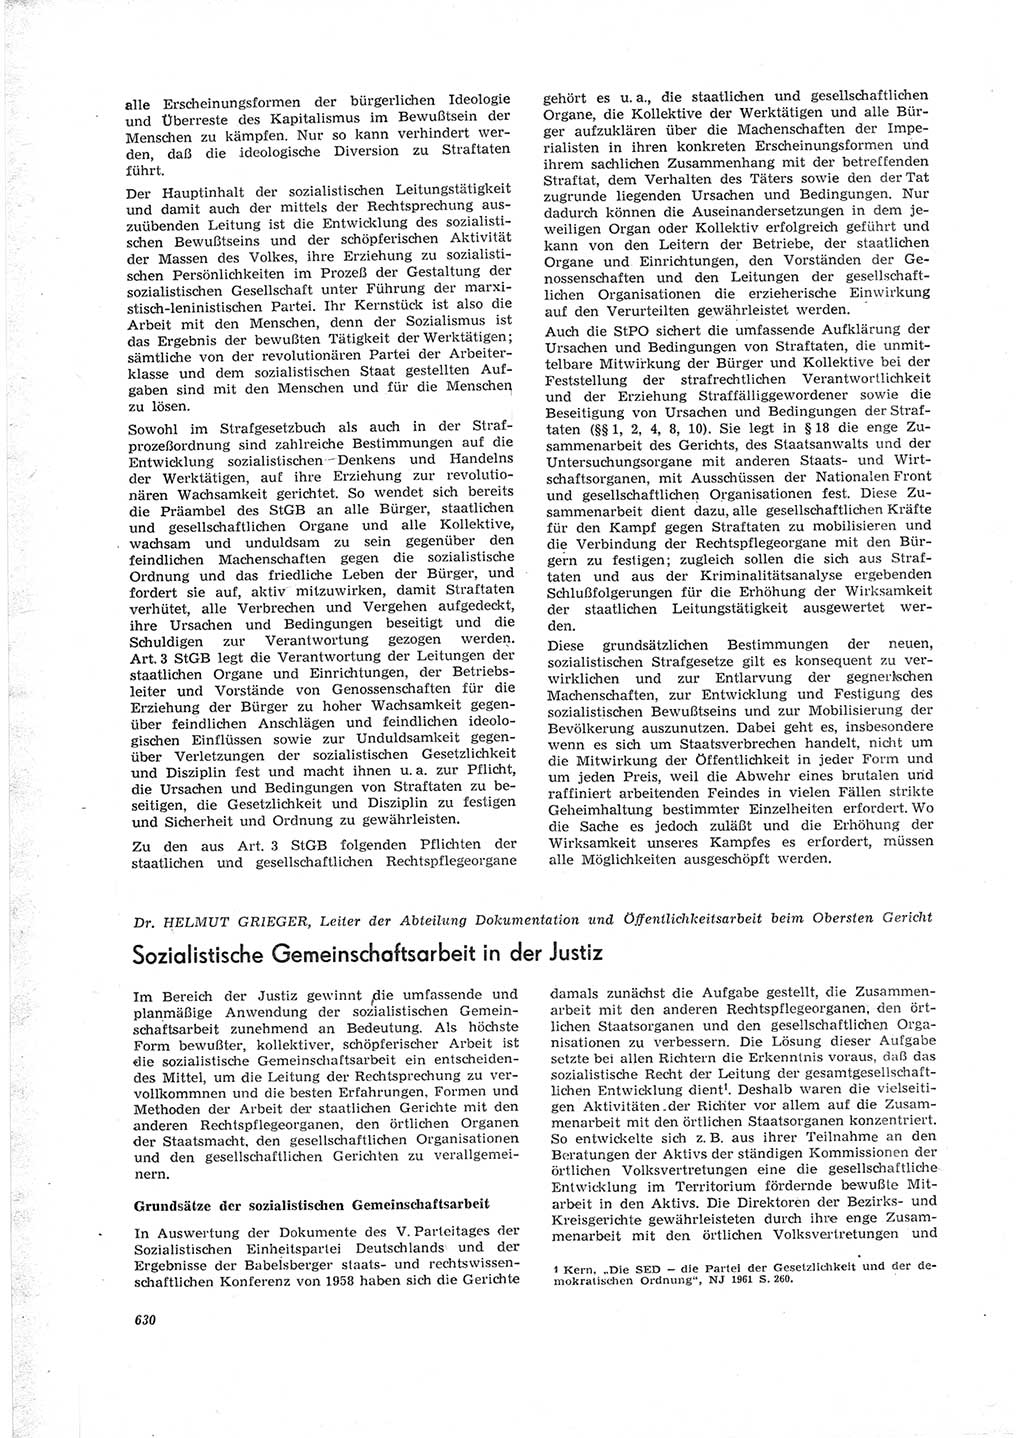 Neue Justiz (NJ), Zeitschrift für Recht und Rechtswissenschaft [Deutsche Demokratische Republik (DDR)], 23. Jahrgang 1969, Seite 630 (NJ DDR 1969, S. 630)